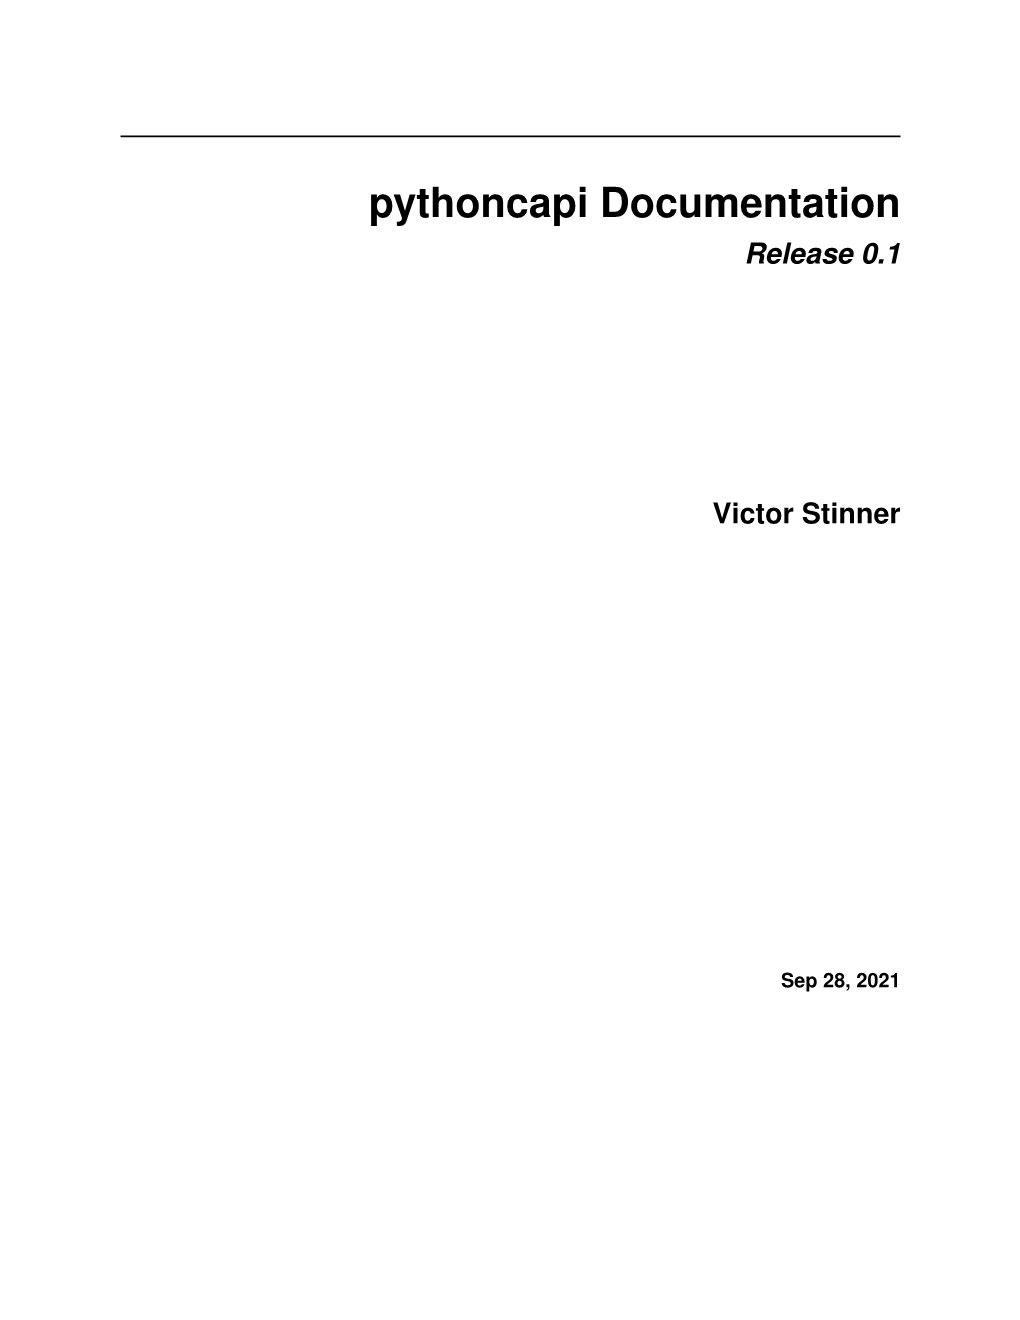 Pythoncapi Documentation Release 0.1